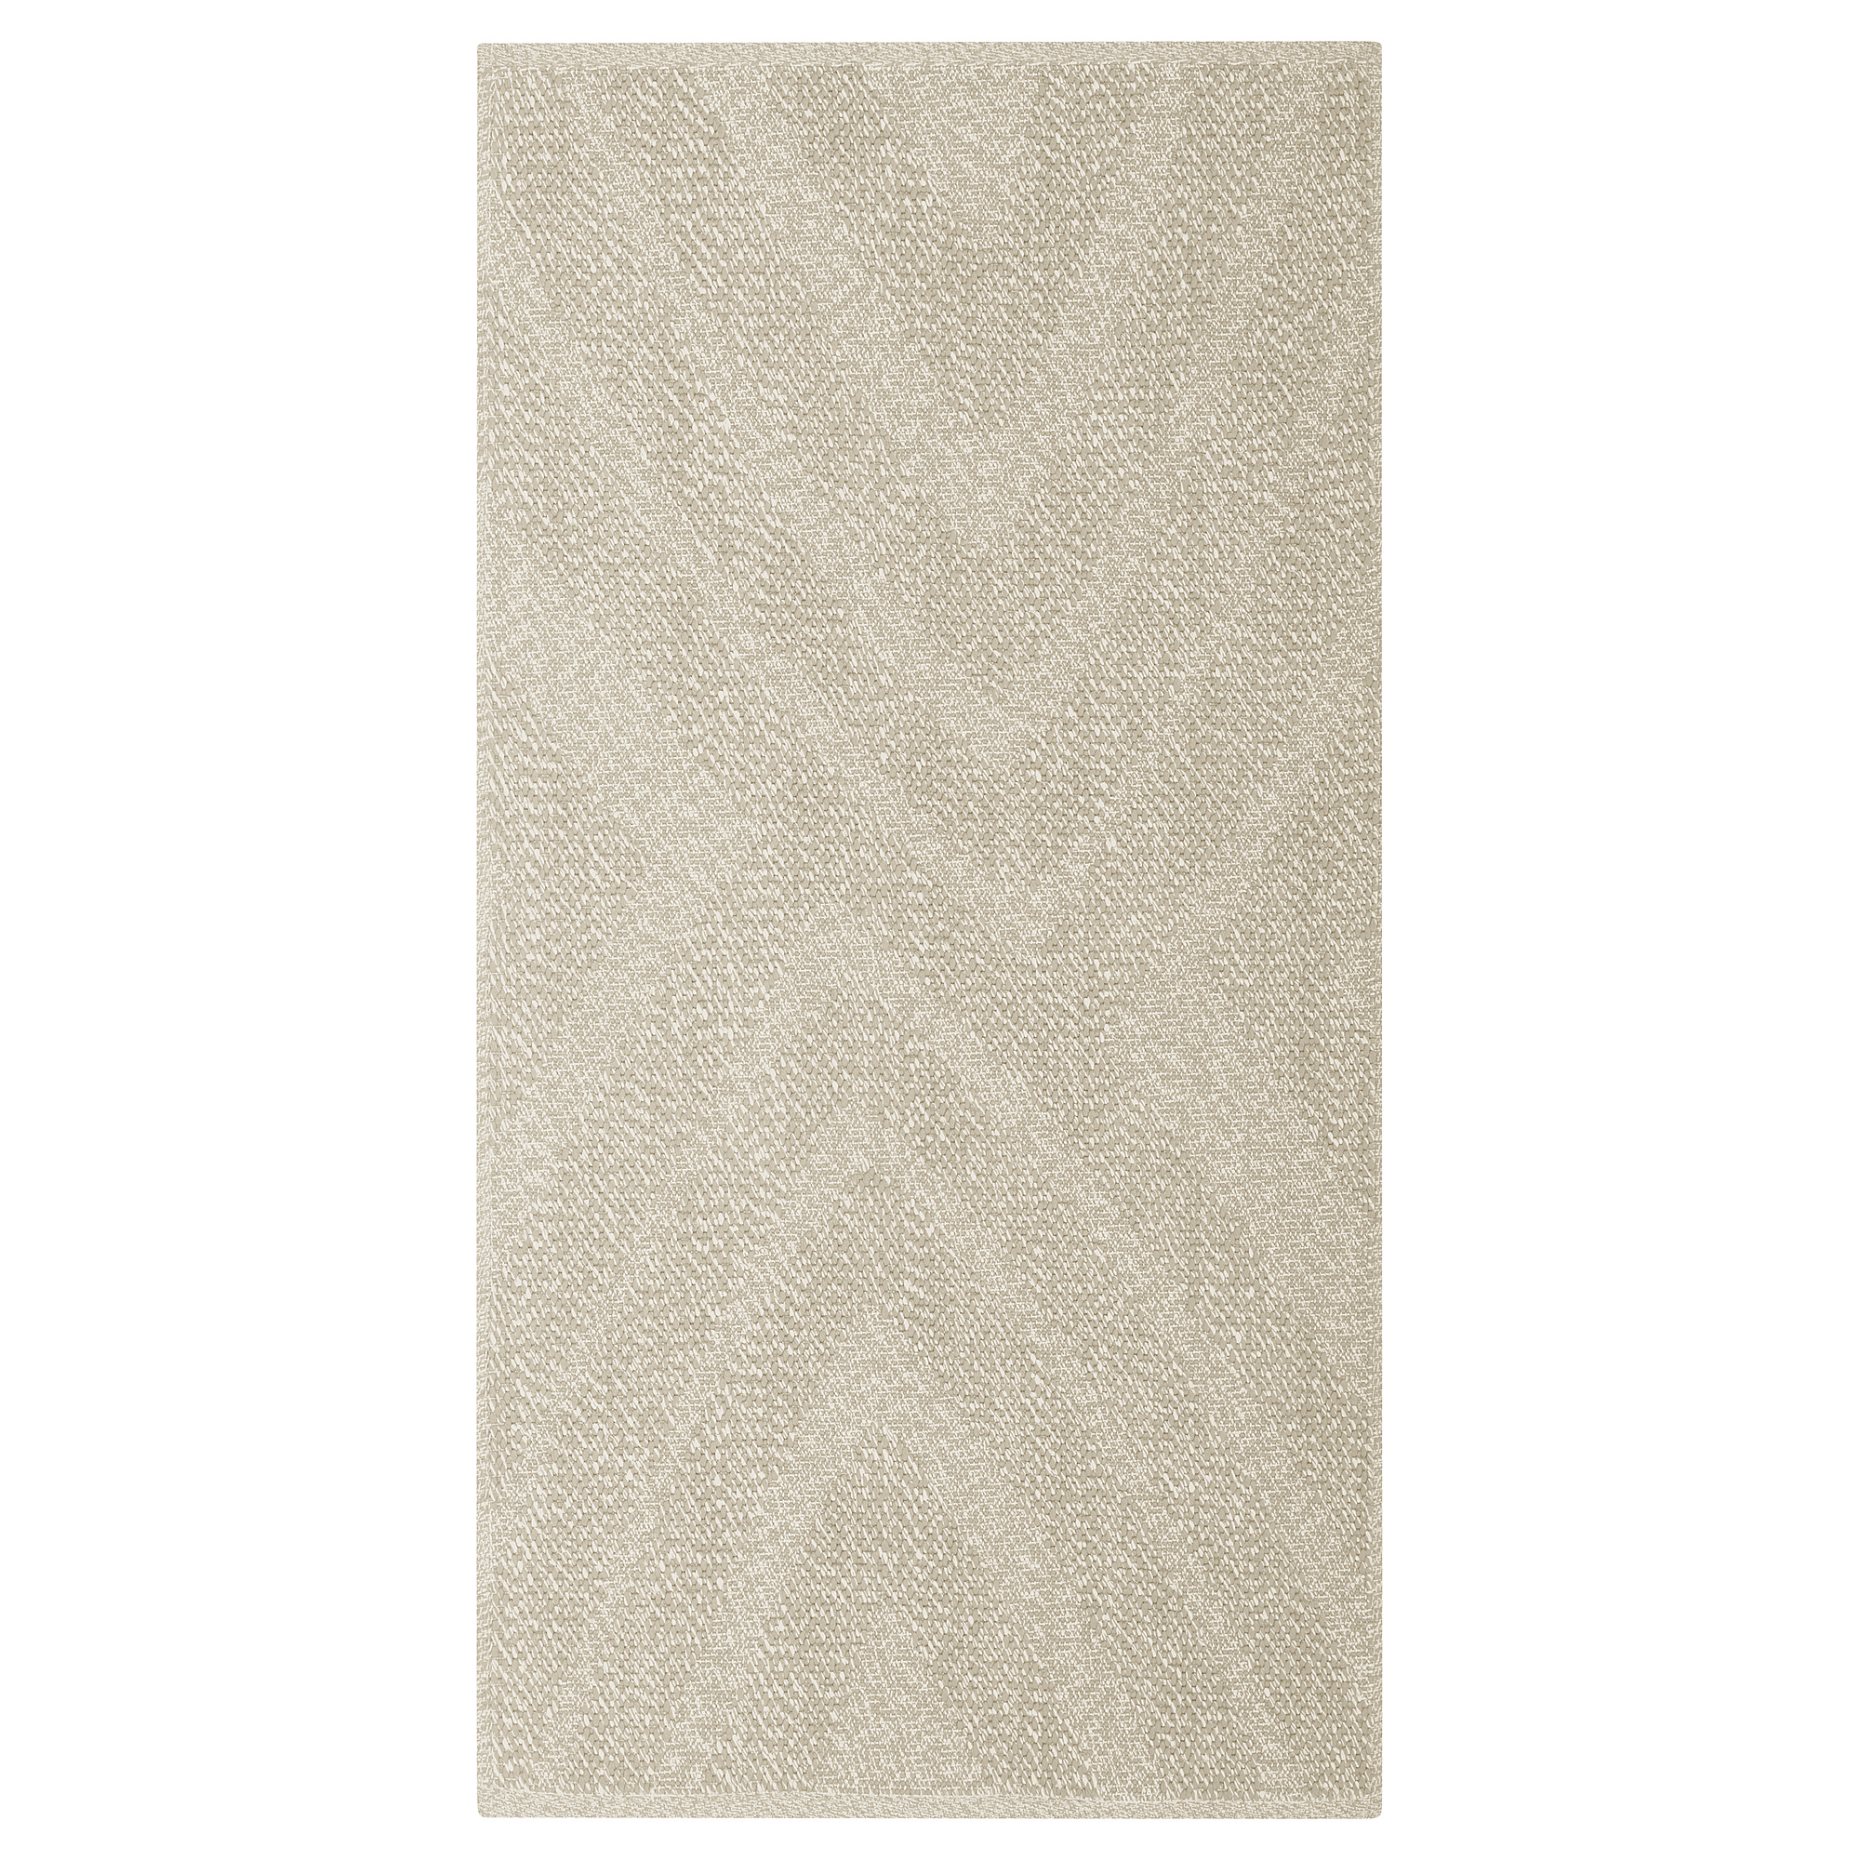 FULLMAKT, rug flatwoven/in/outdoor, 80x150 cm, 605.731.14